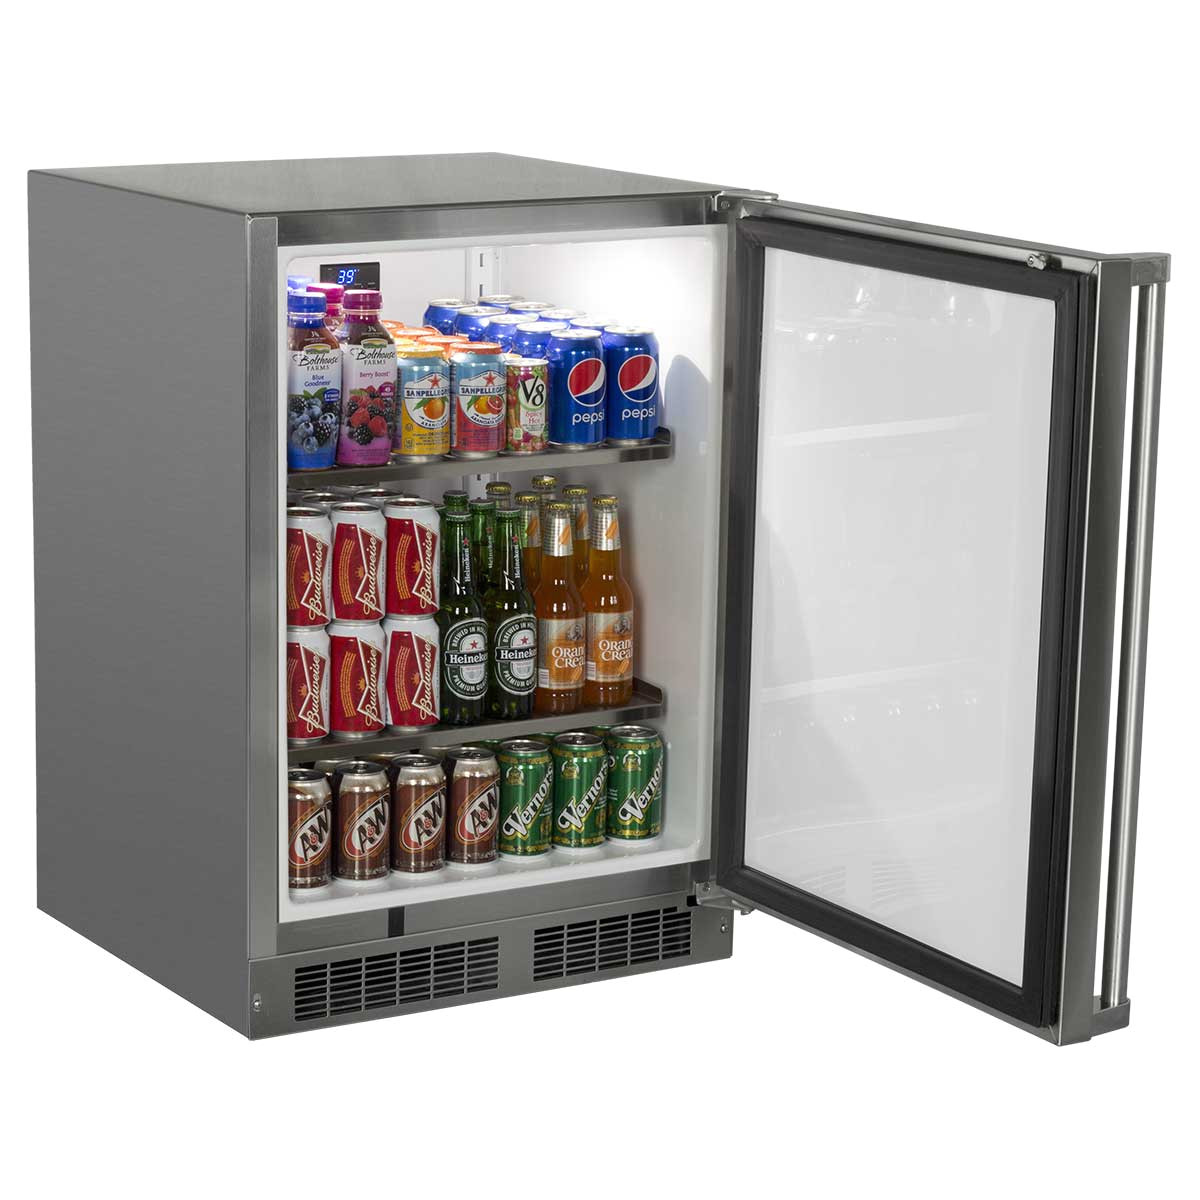 24 outdoor refrigerator mo24ras1